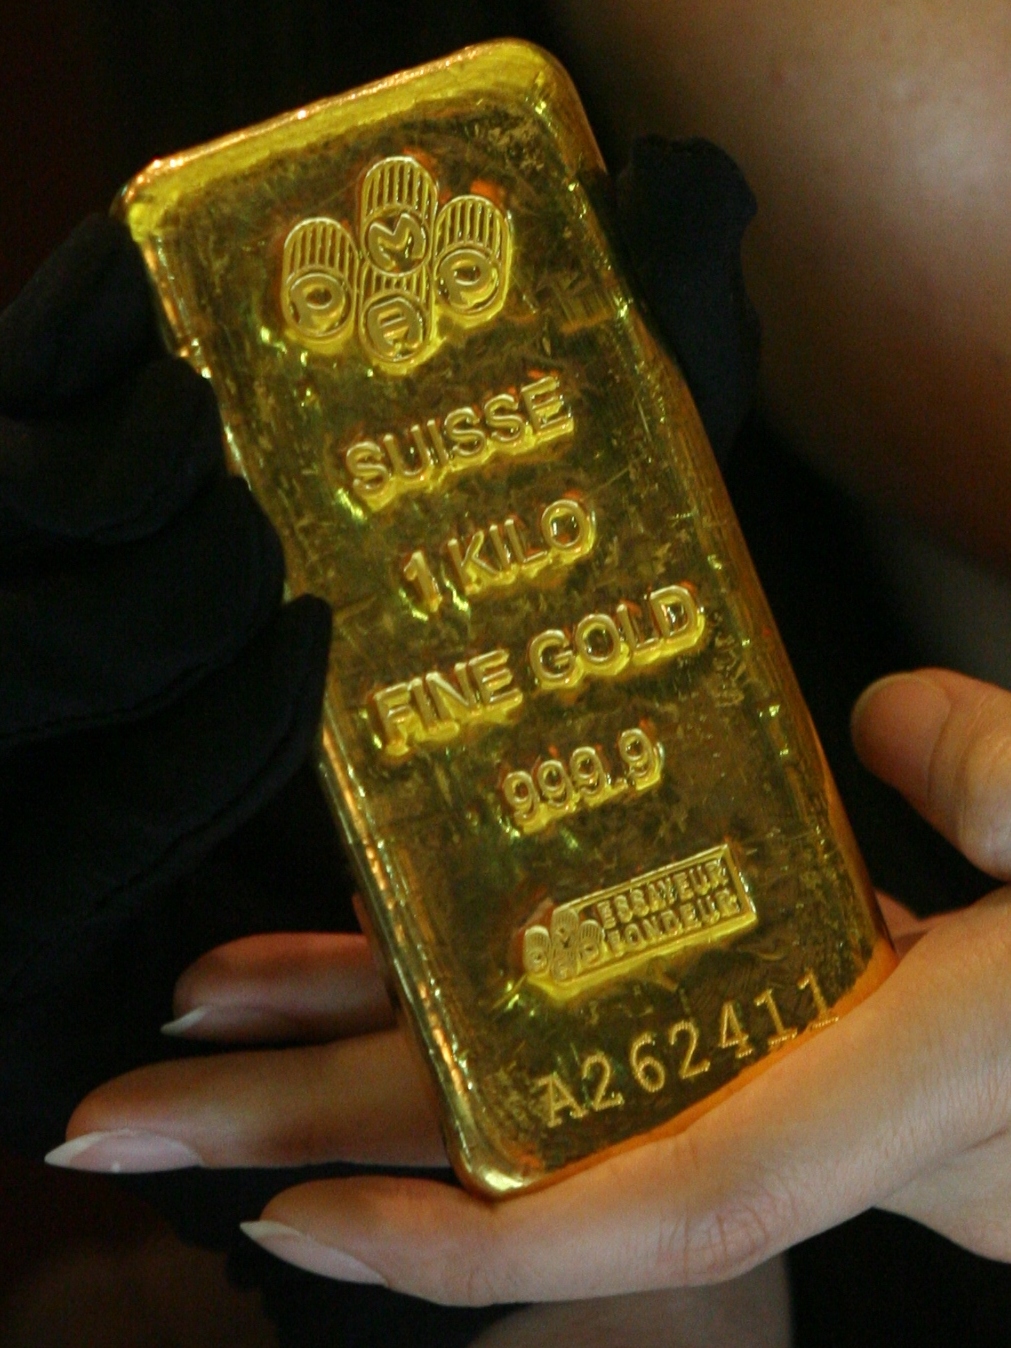 1 2 кг золота